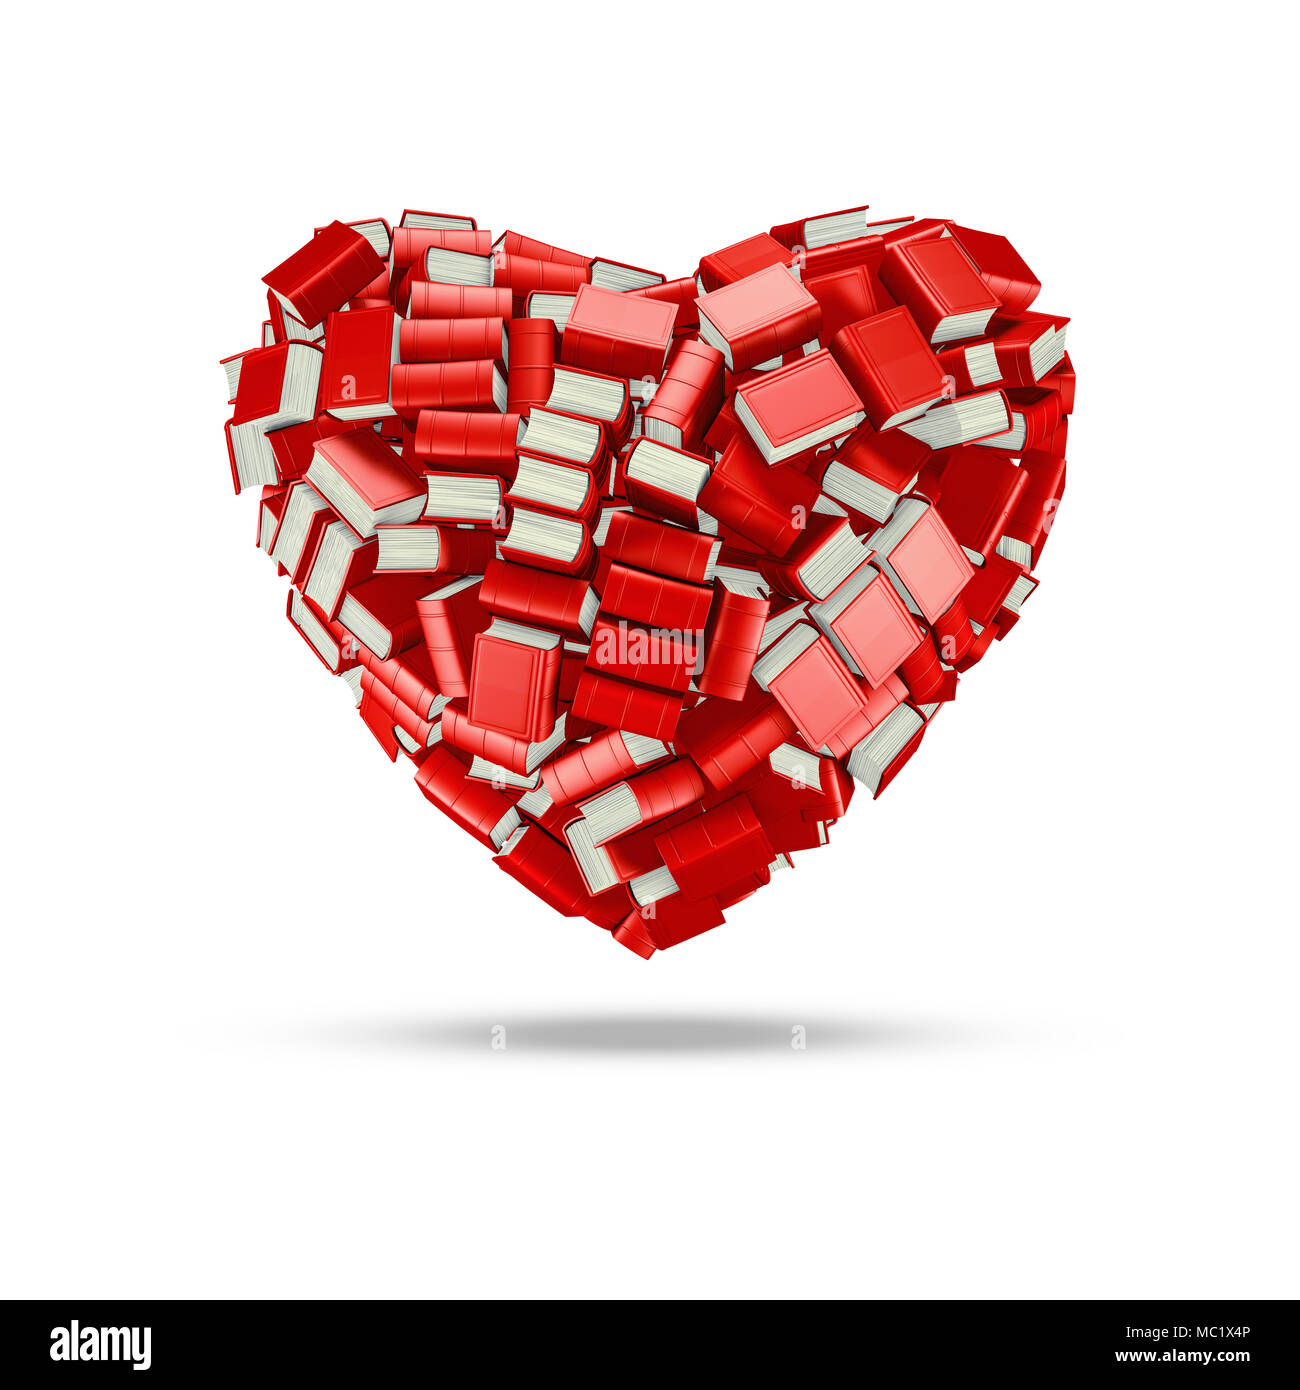 Den gelehrten Herz-/3D-Darstellung von Hunderten von Dick gebundene Bücher bilden Buchliebhaber Herz Stockfoto